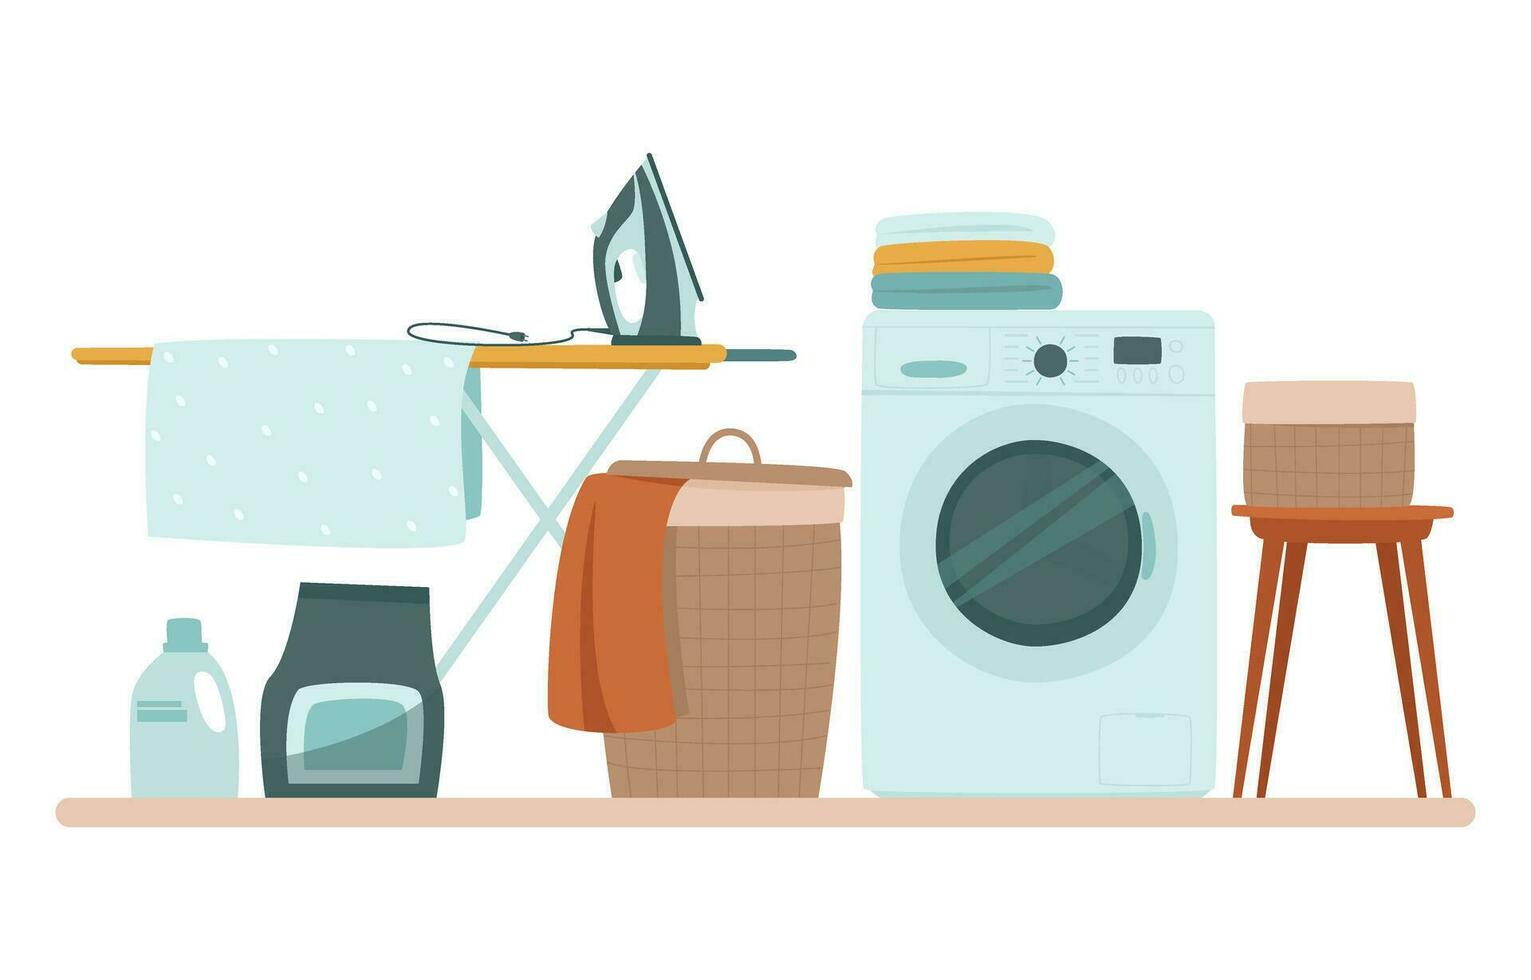 de wasserij kamer heeft een het wassen machine, een wasserij mand en een strijken bord en ijzer vector